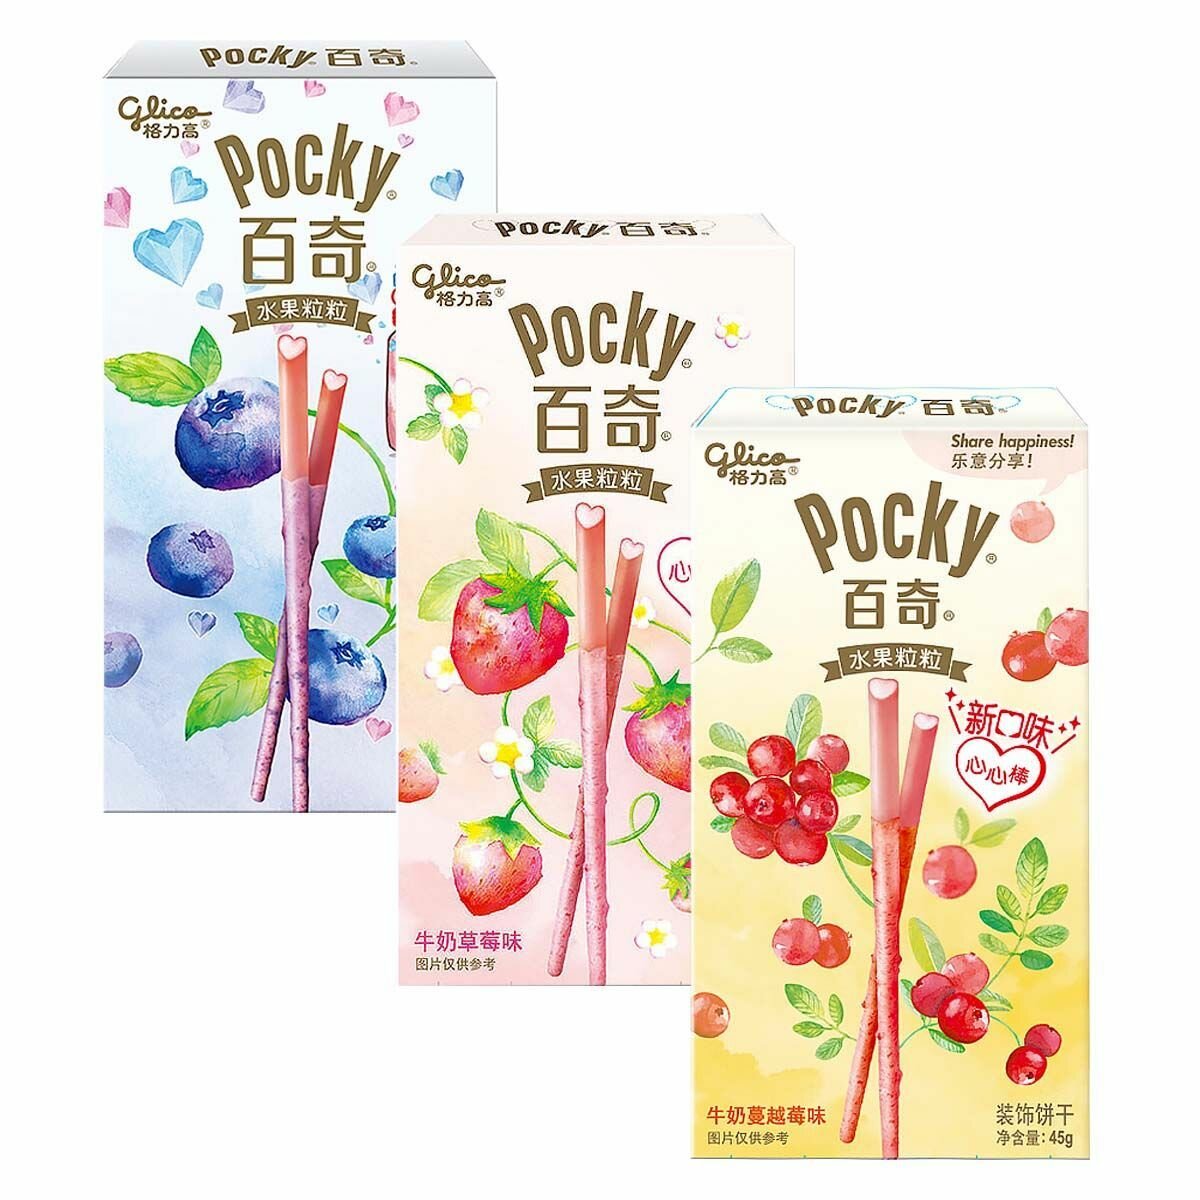 Бисквитные палочки Glico Pocky со вкусом мороженого - набор 3 вкуса (черника, клубника, клюква) (Китай), 45 г (3 шт)